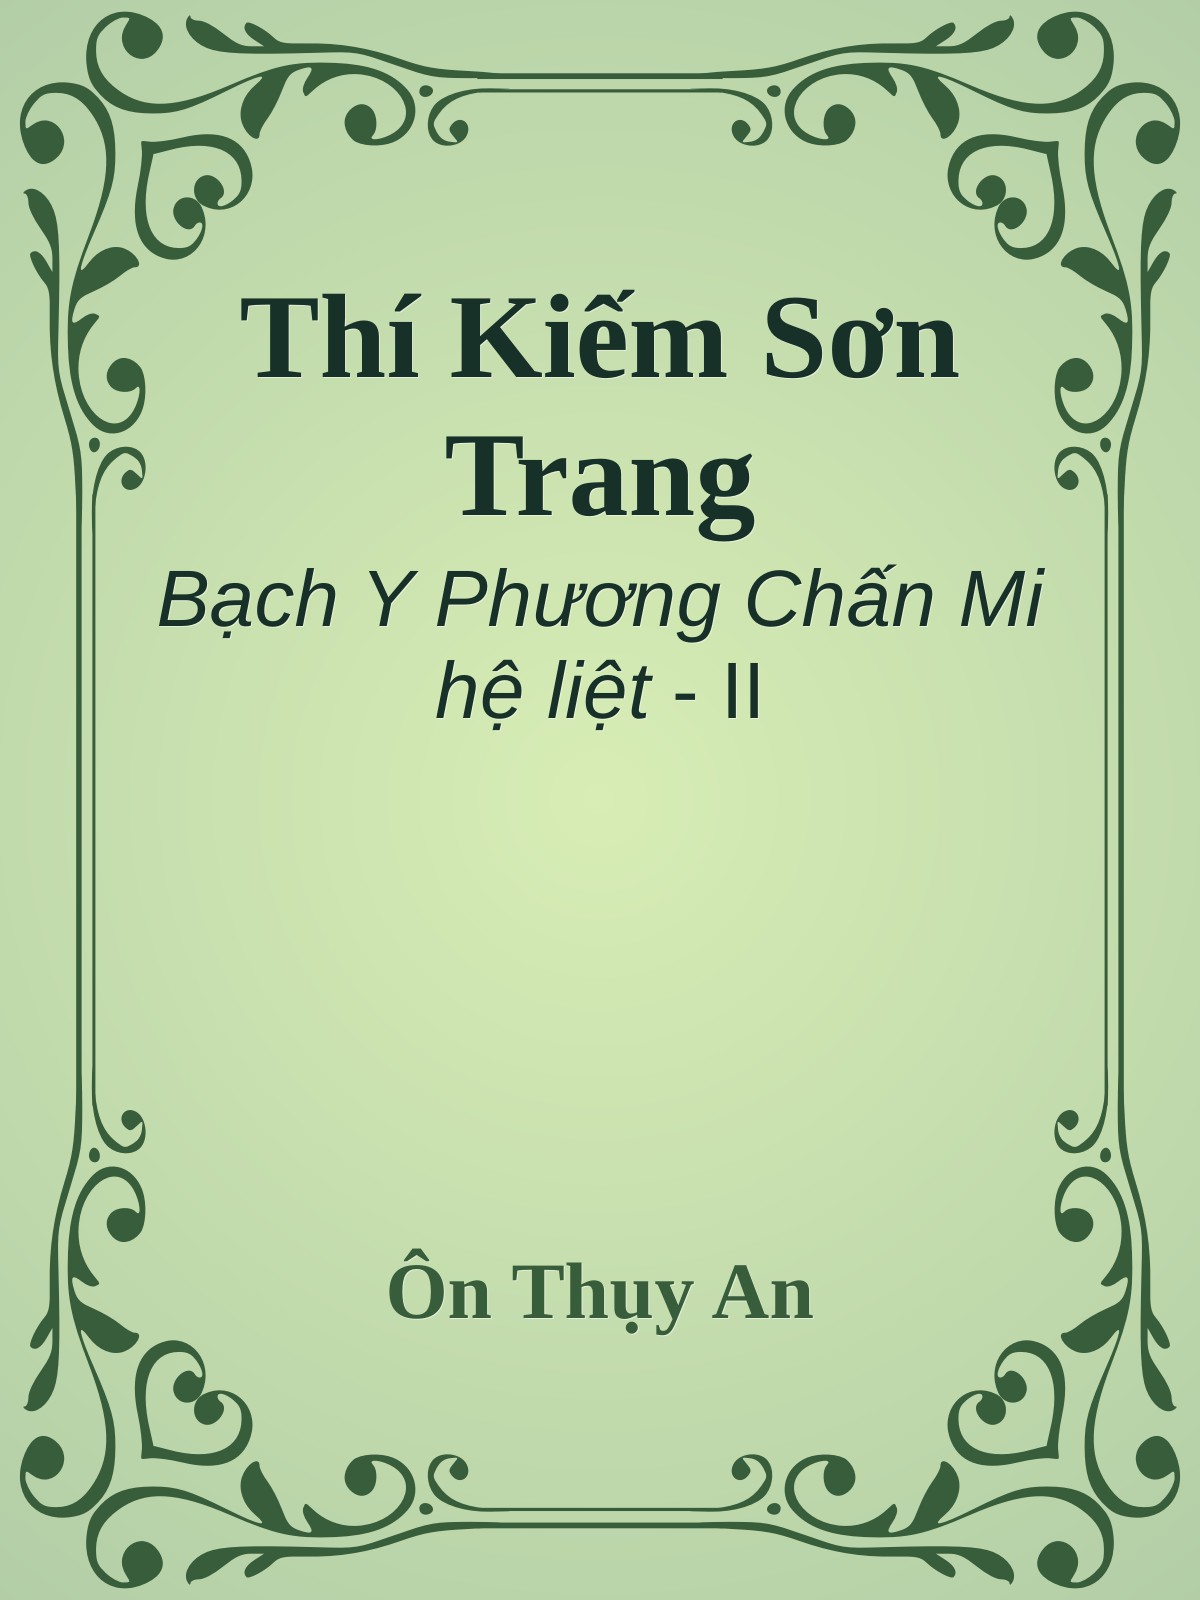 Thí Kiếm Sơn Trang - Ôn Thụy An